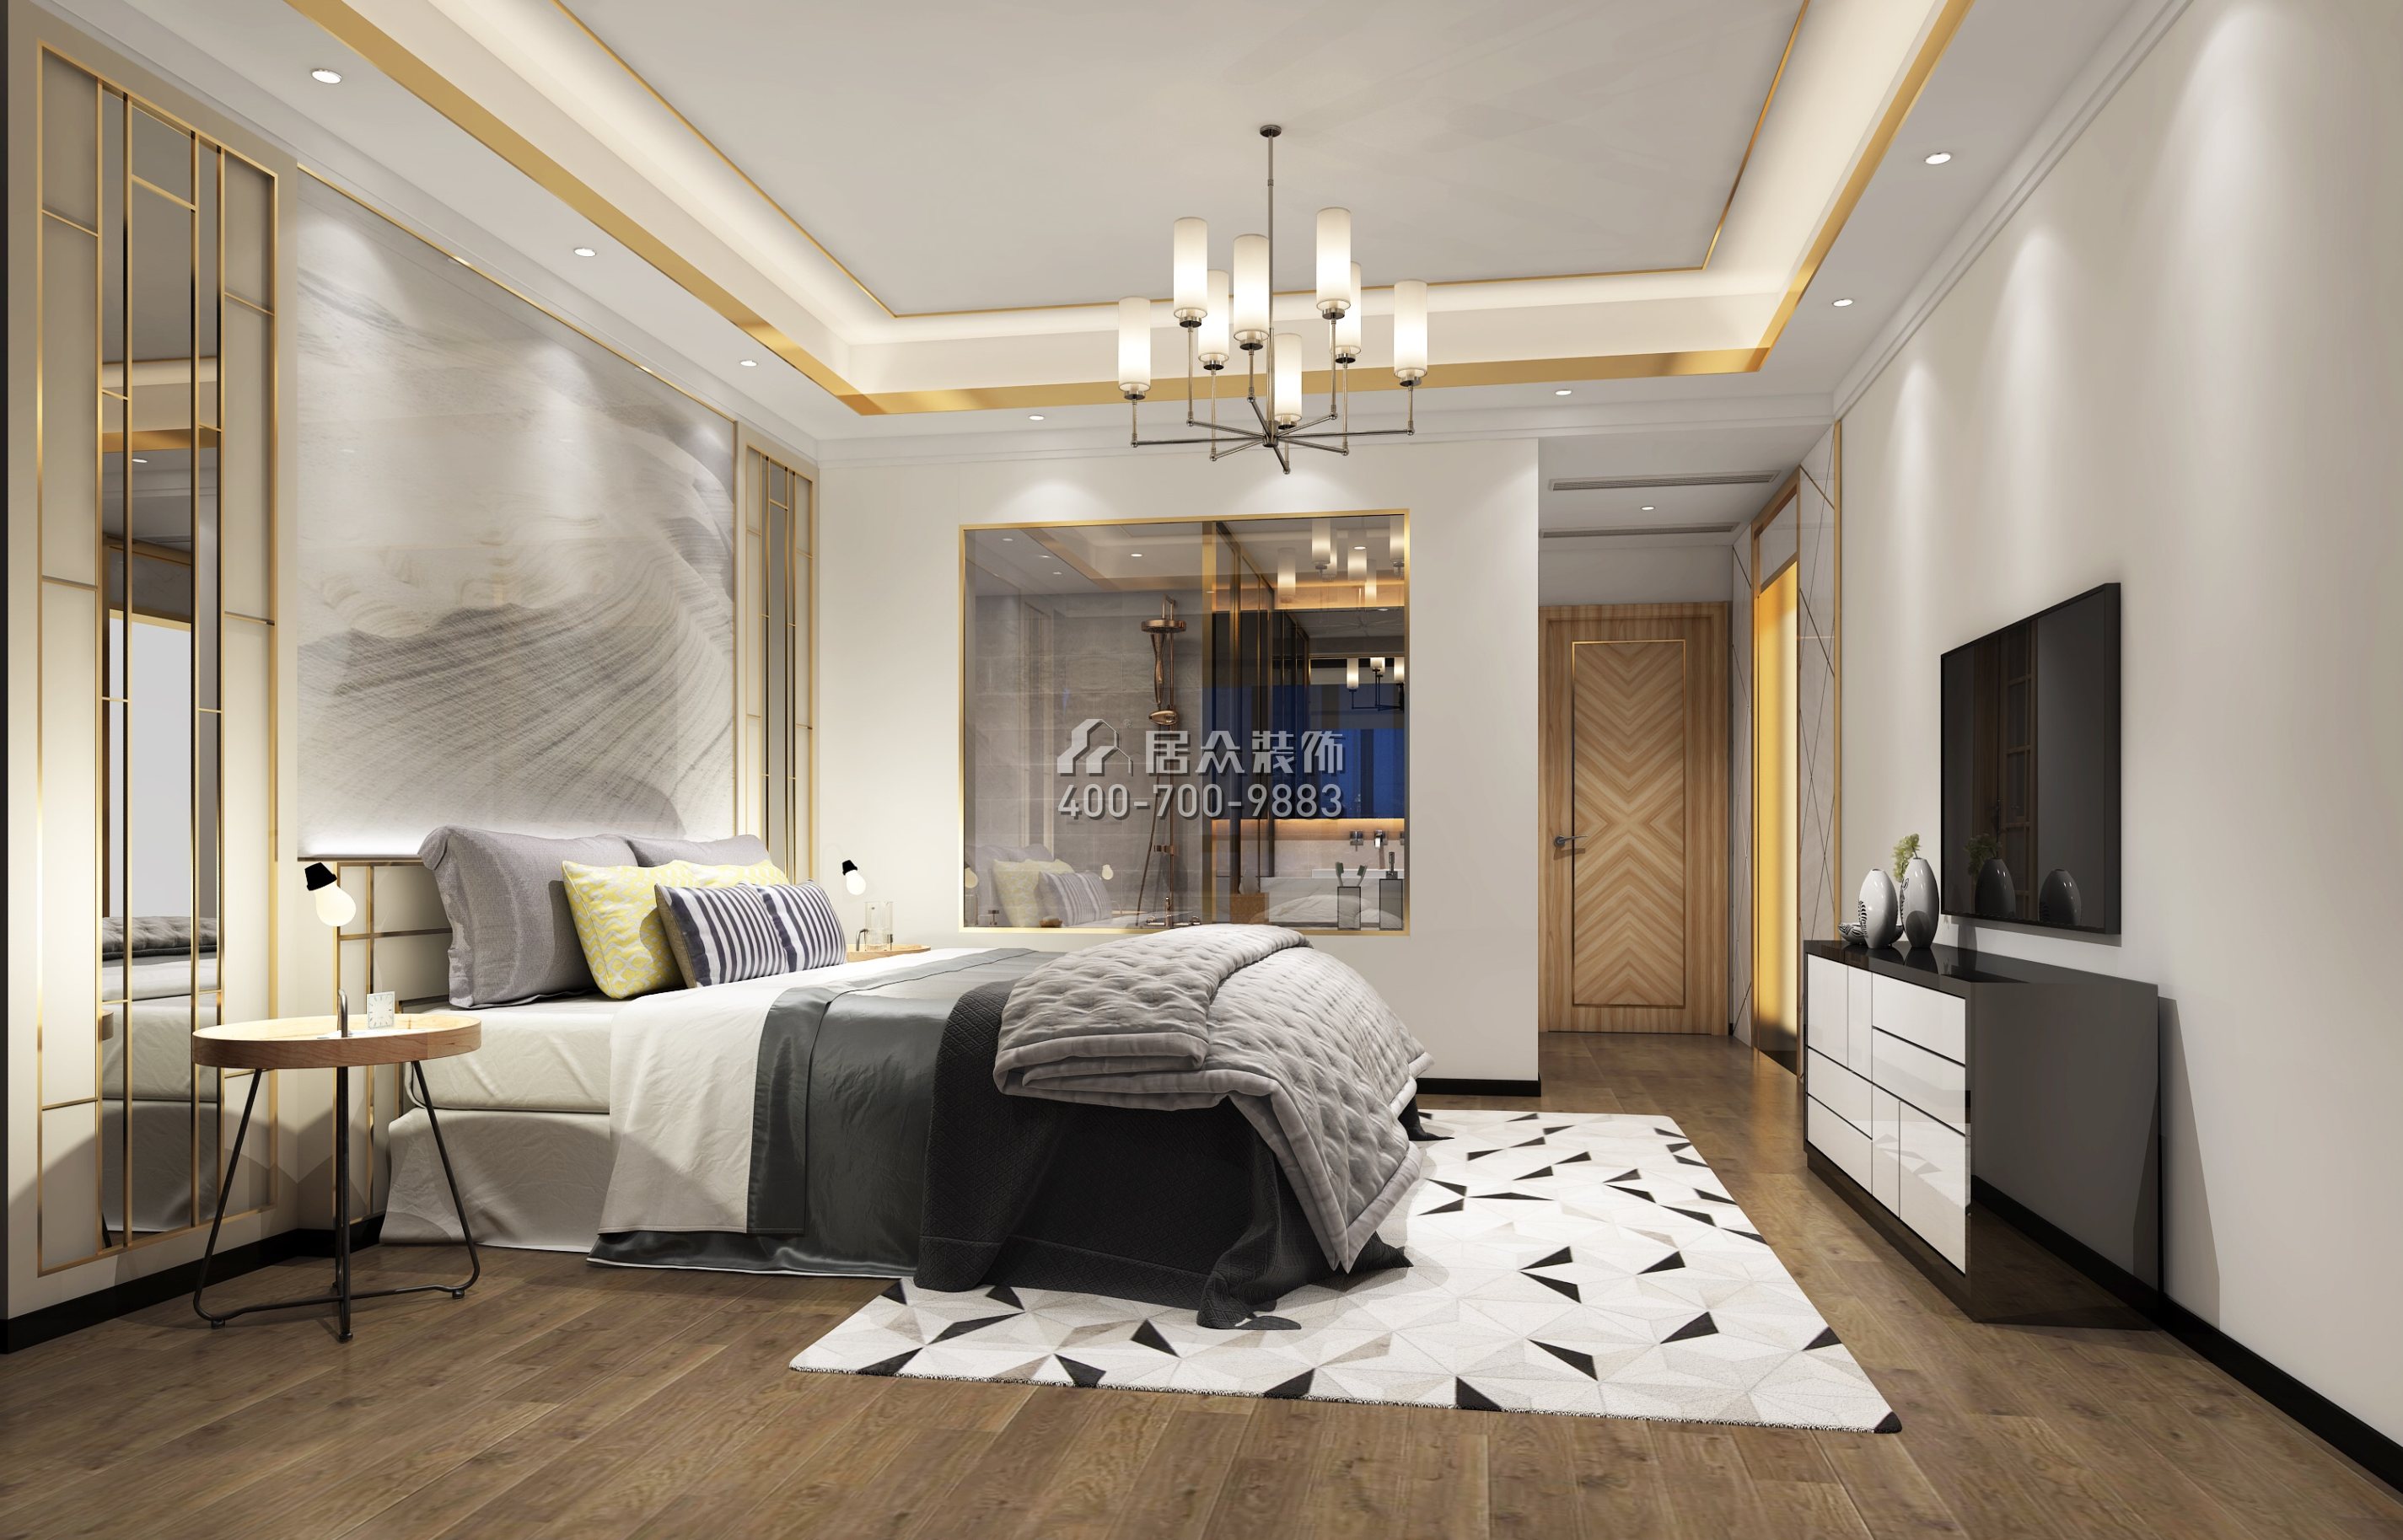 华发峰景湾168平方米现代简约风格平层户型卧室装修效果图